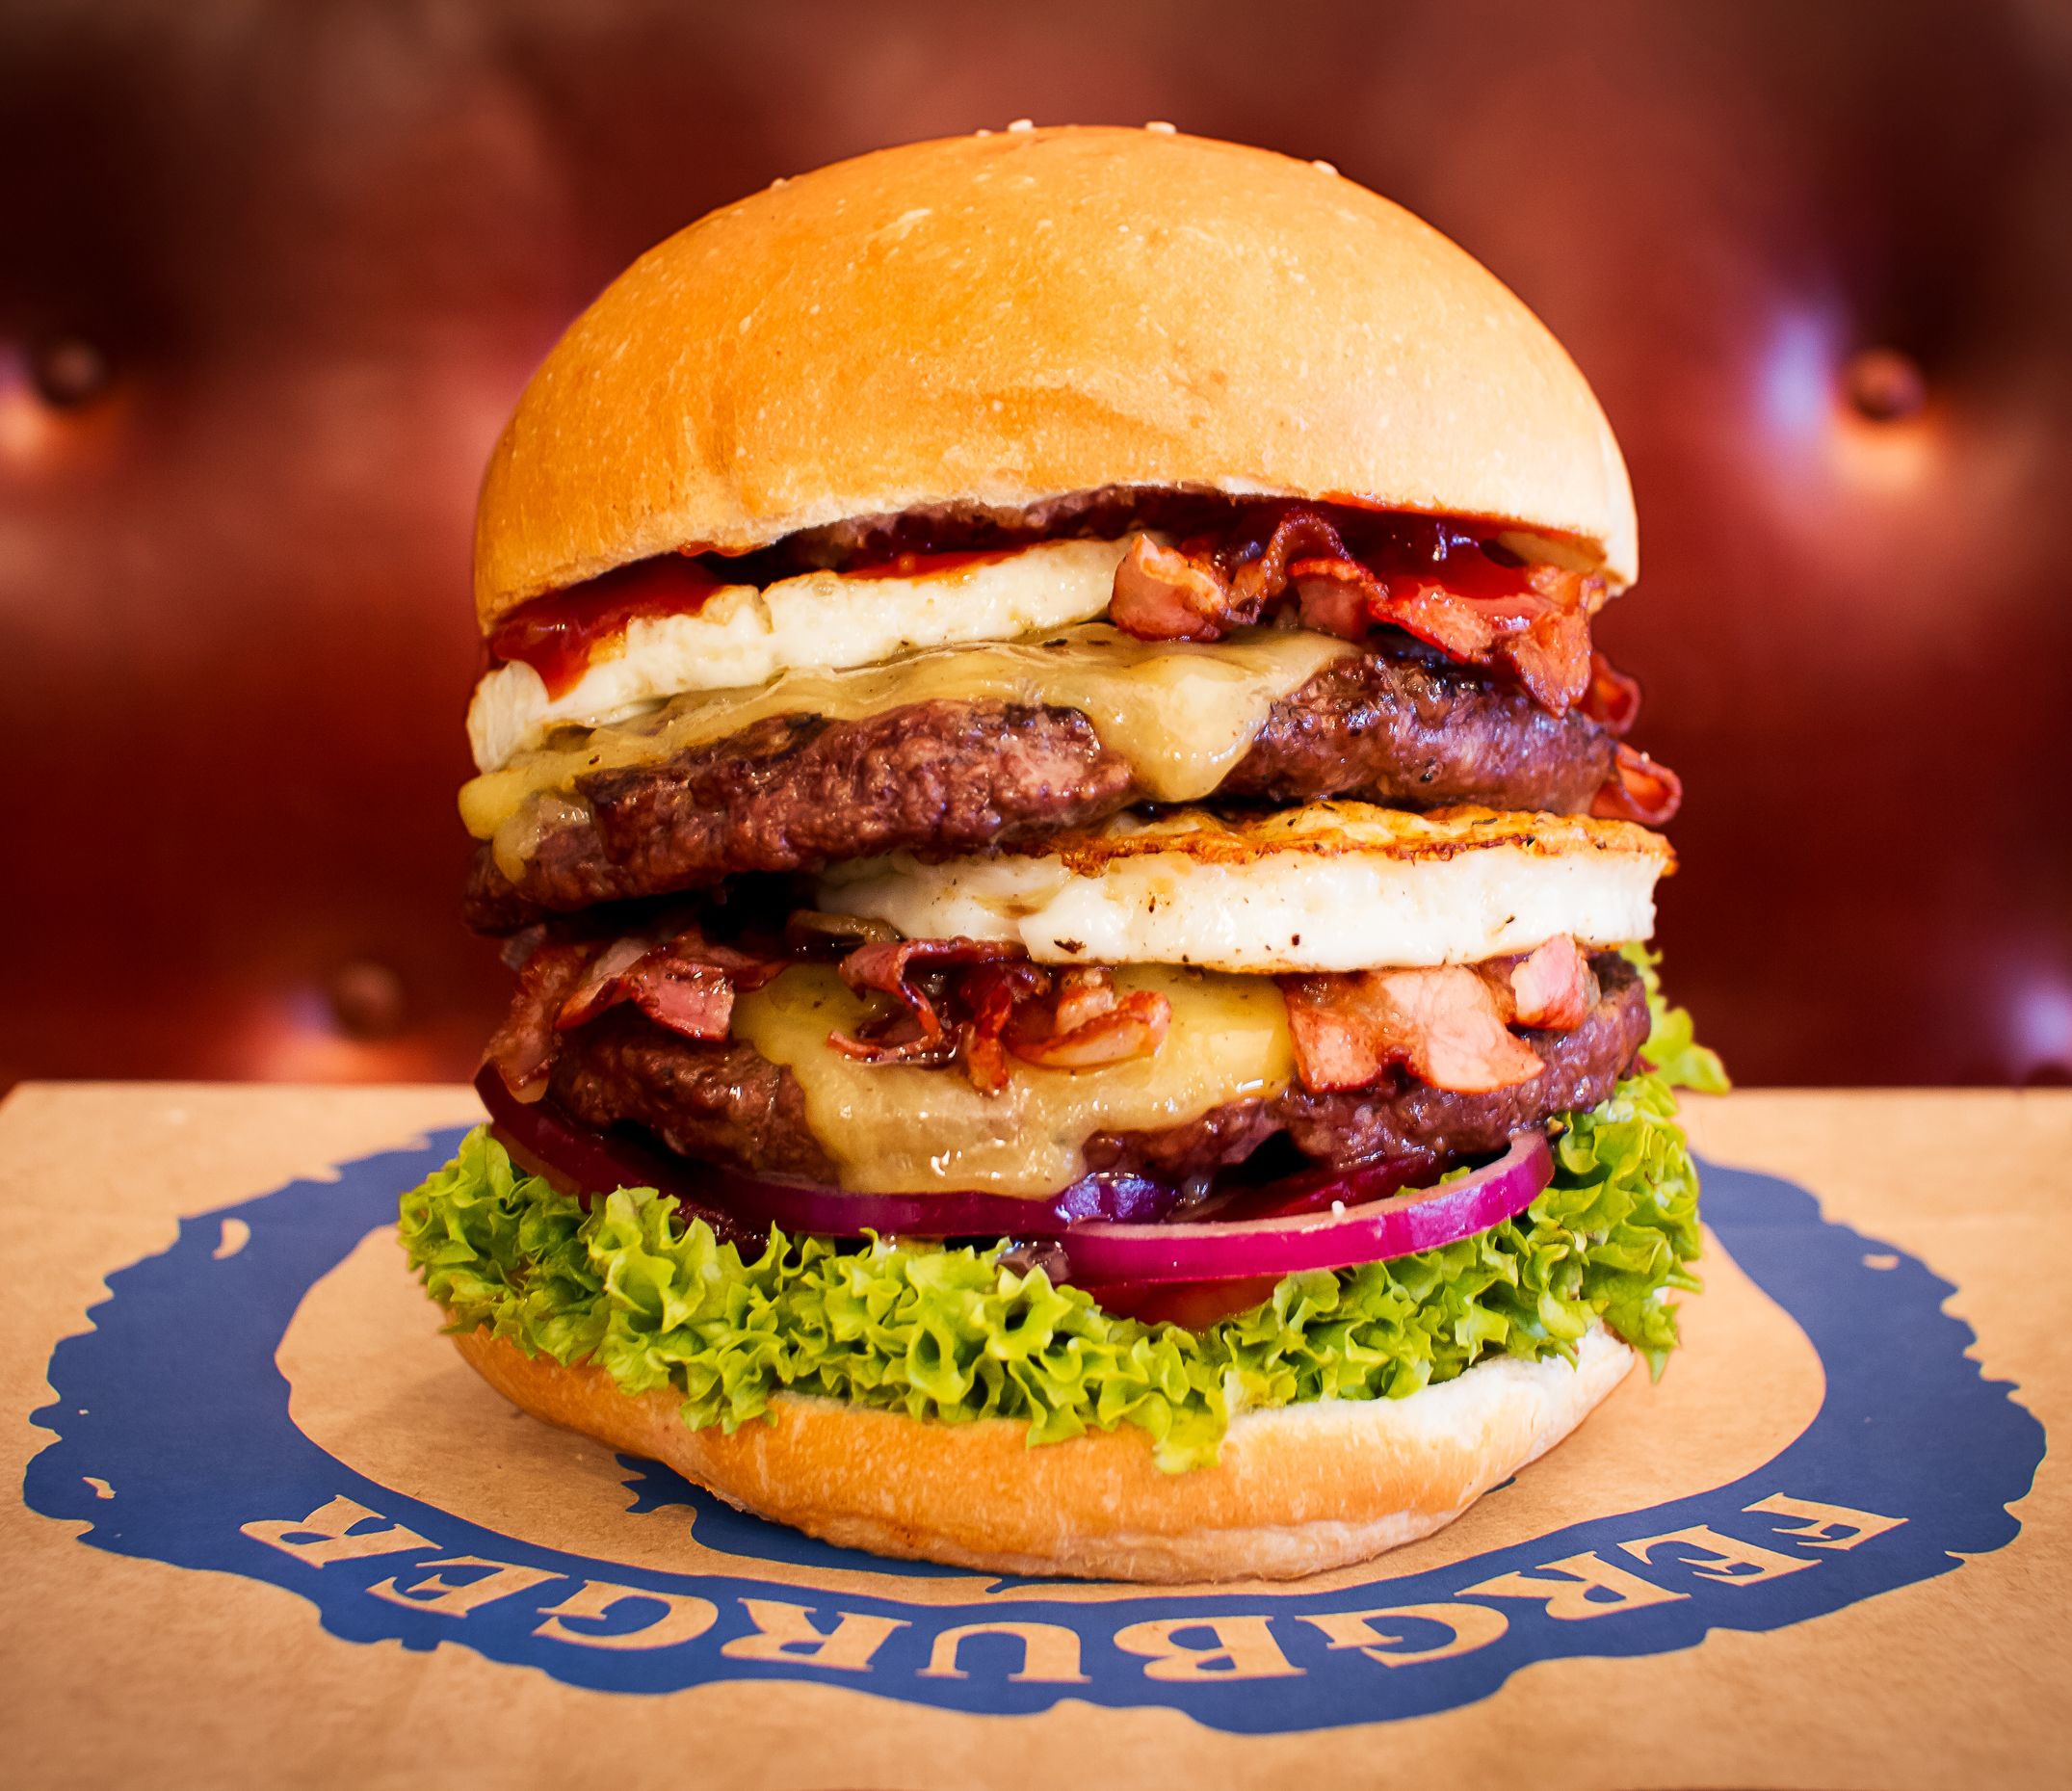 erindringsmønter Vulkan At adskille Fergburger: Best burger in New Zealand? Or the world? | CNN